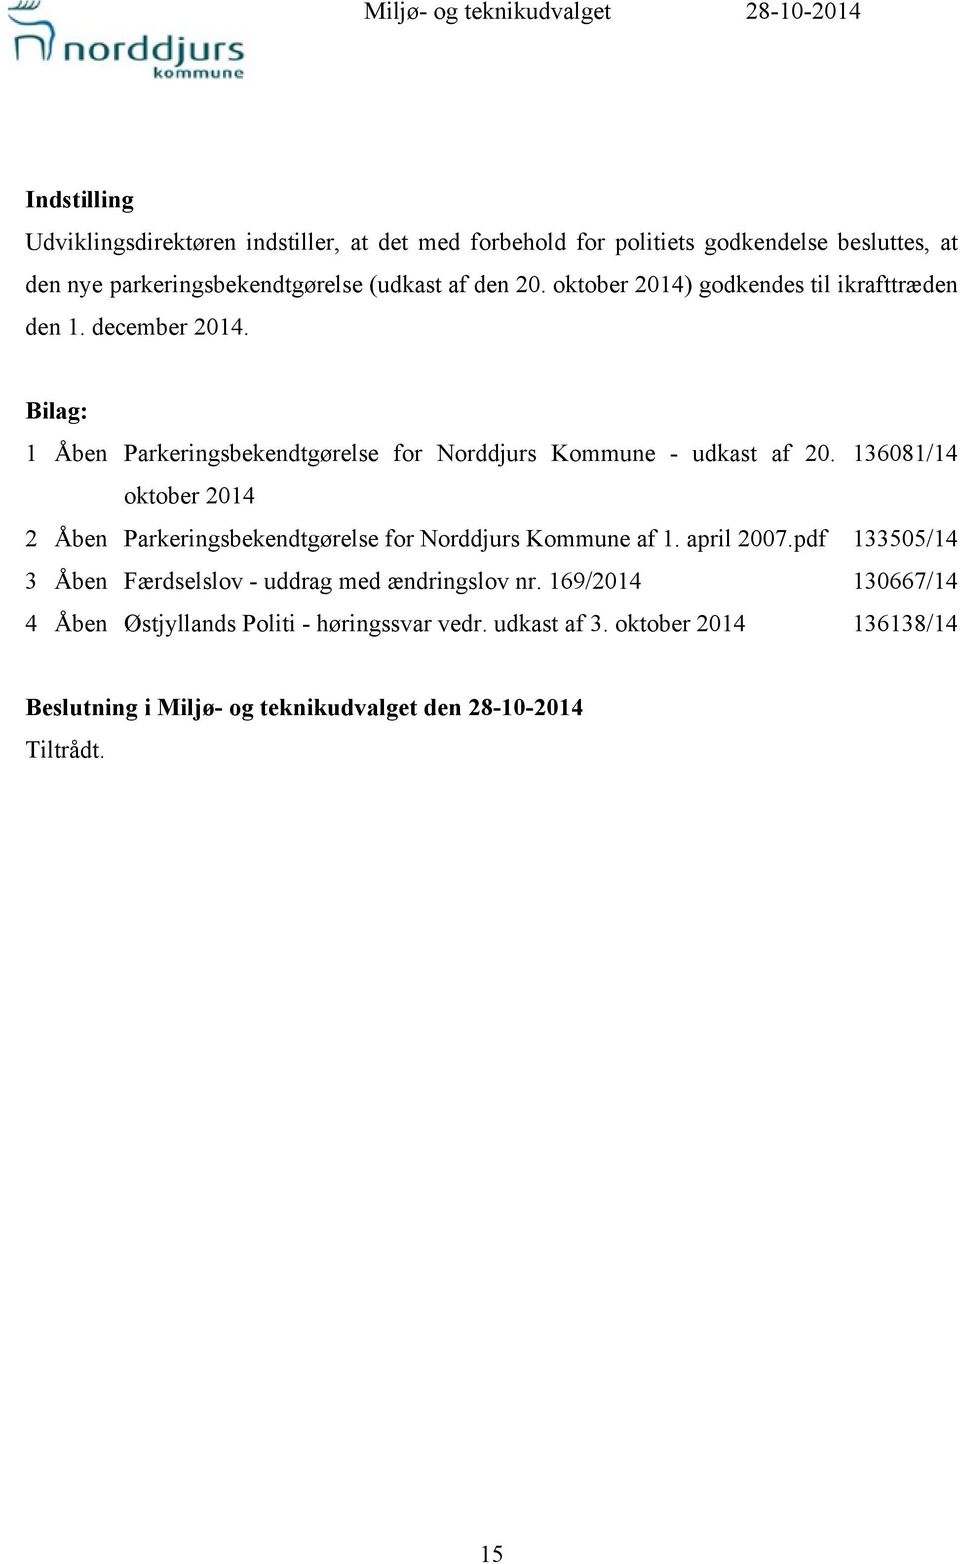 Bilag: 1 Åben Parkeringsbekendtgørelse for Norddjurs Kommune - udkast af 20. 136081/14 oktober 2014 2 Åben Parkeringsbekendtgørelse for Norddjurs Kommune af 1.